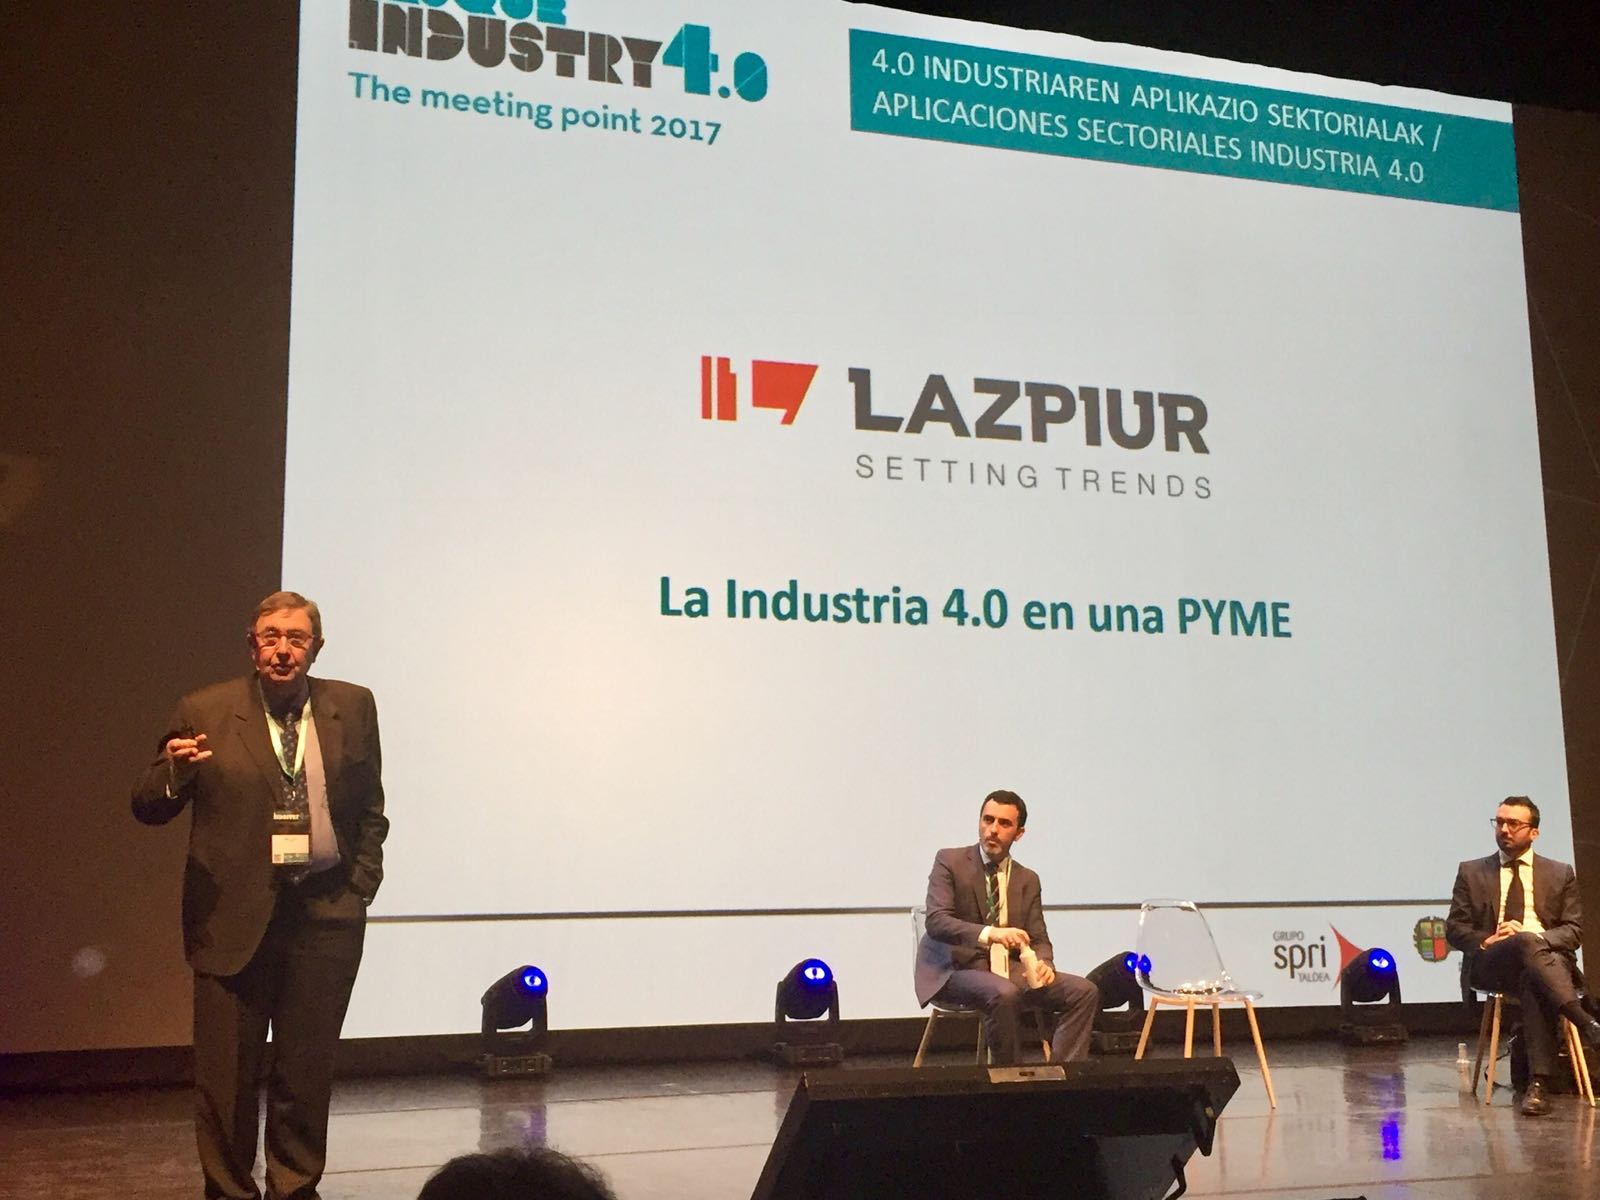  LAZPIUR demuestra en el congreso Basque Industry 4.0 que las pymes “también pueden aplicar la fabricación avanzada”